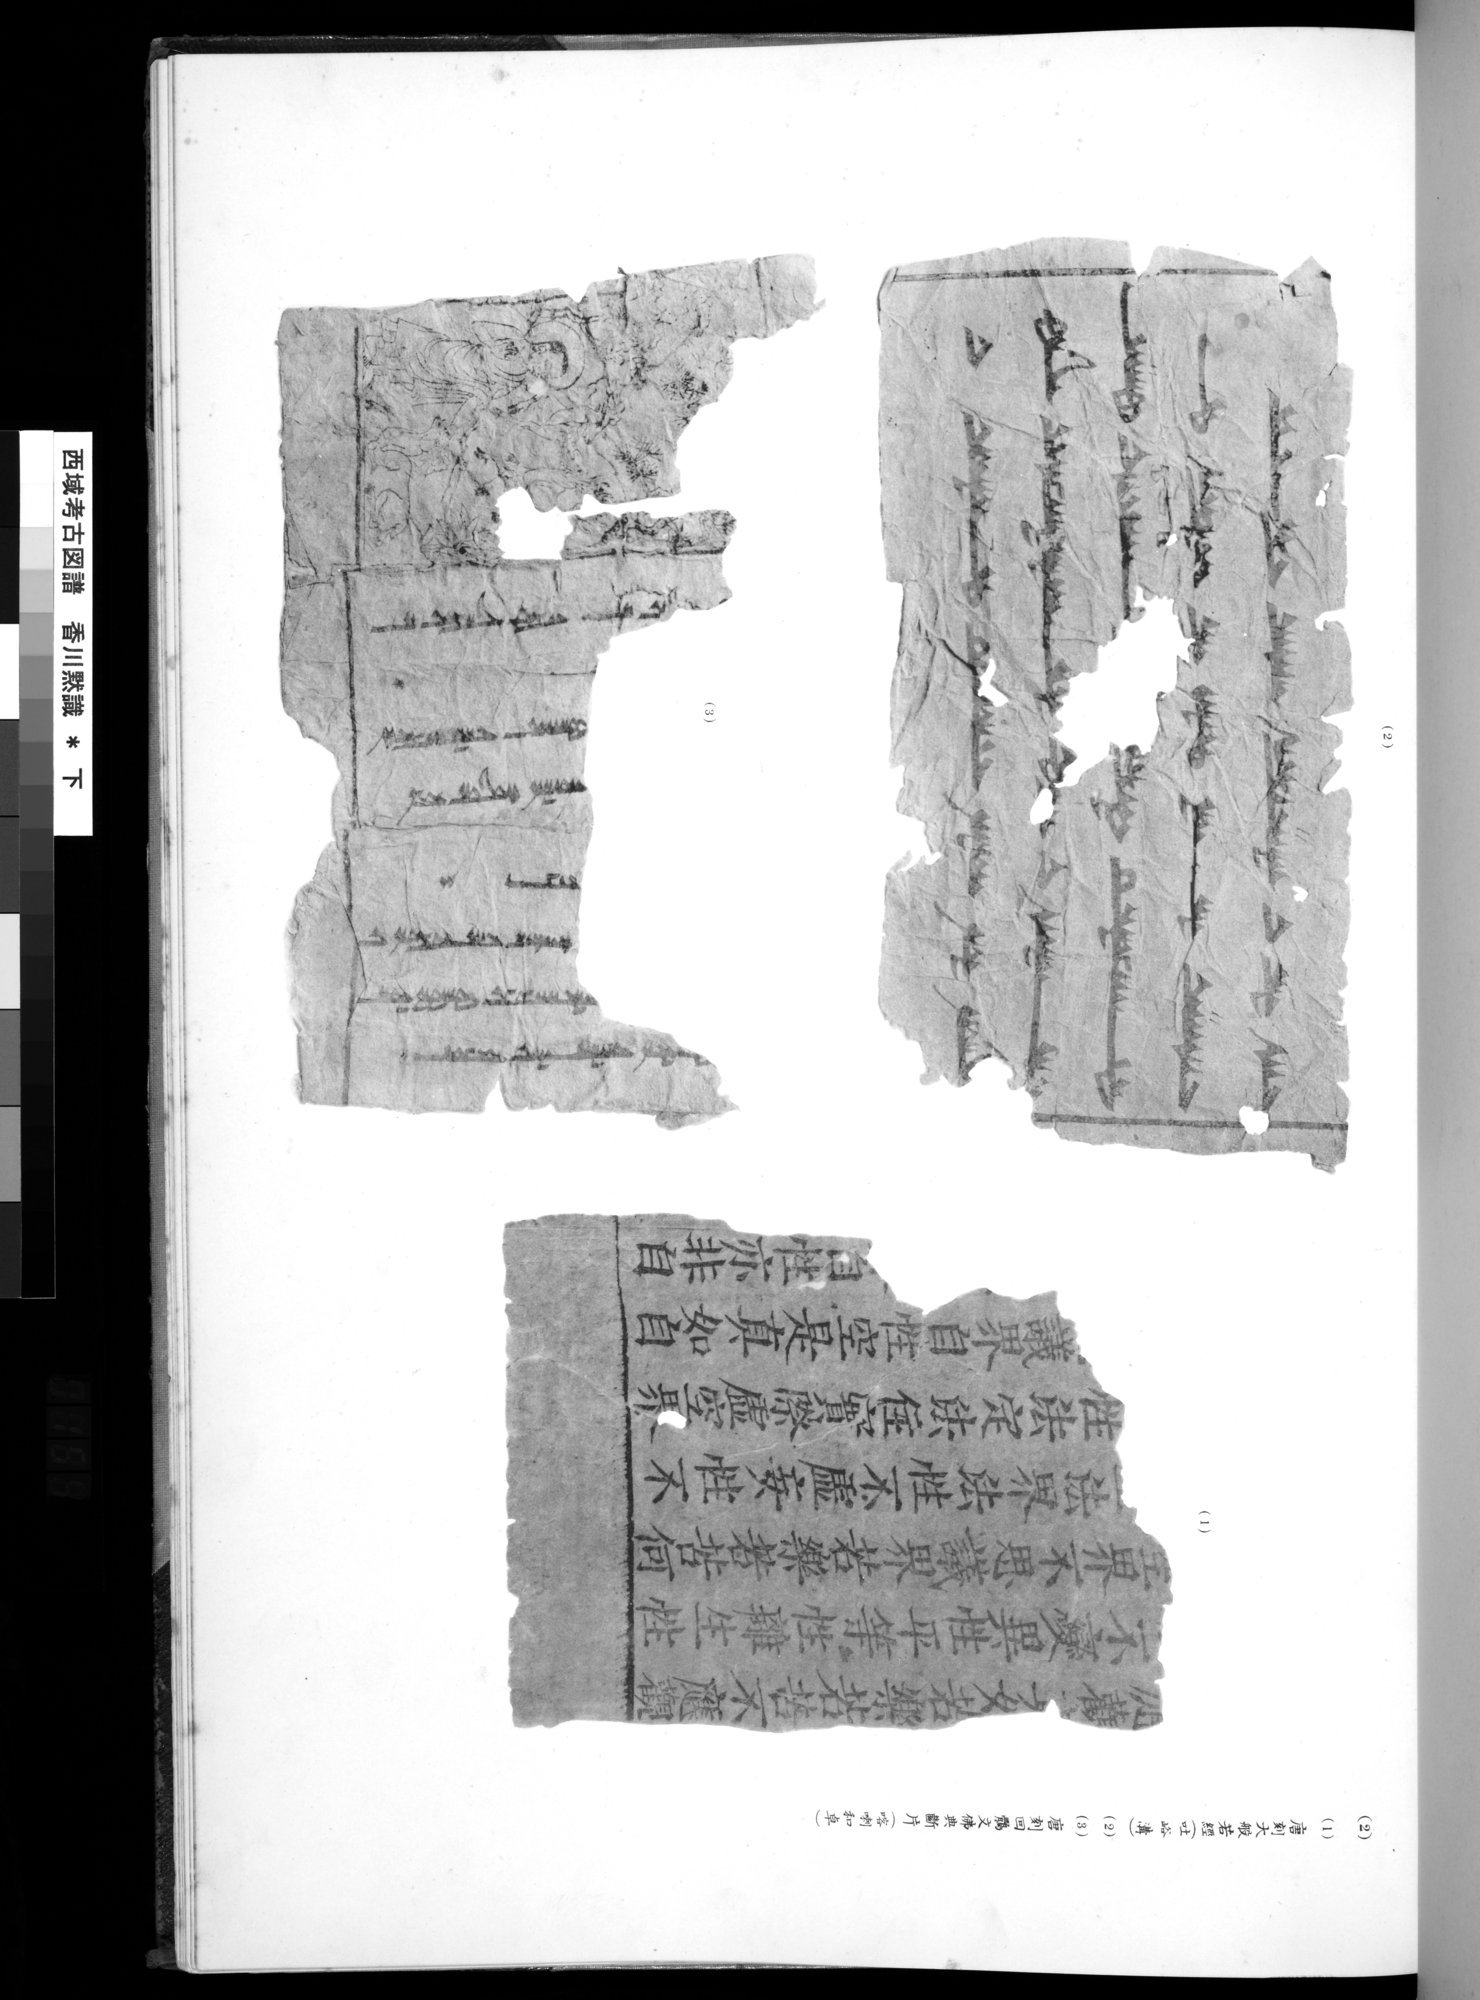 西域考古図譜 : vol.2 / Page 307 (Grayscale High Resolution Image)